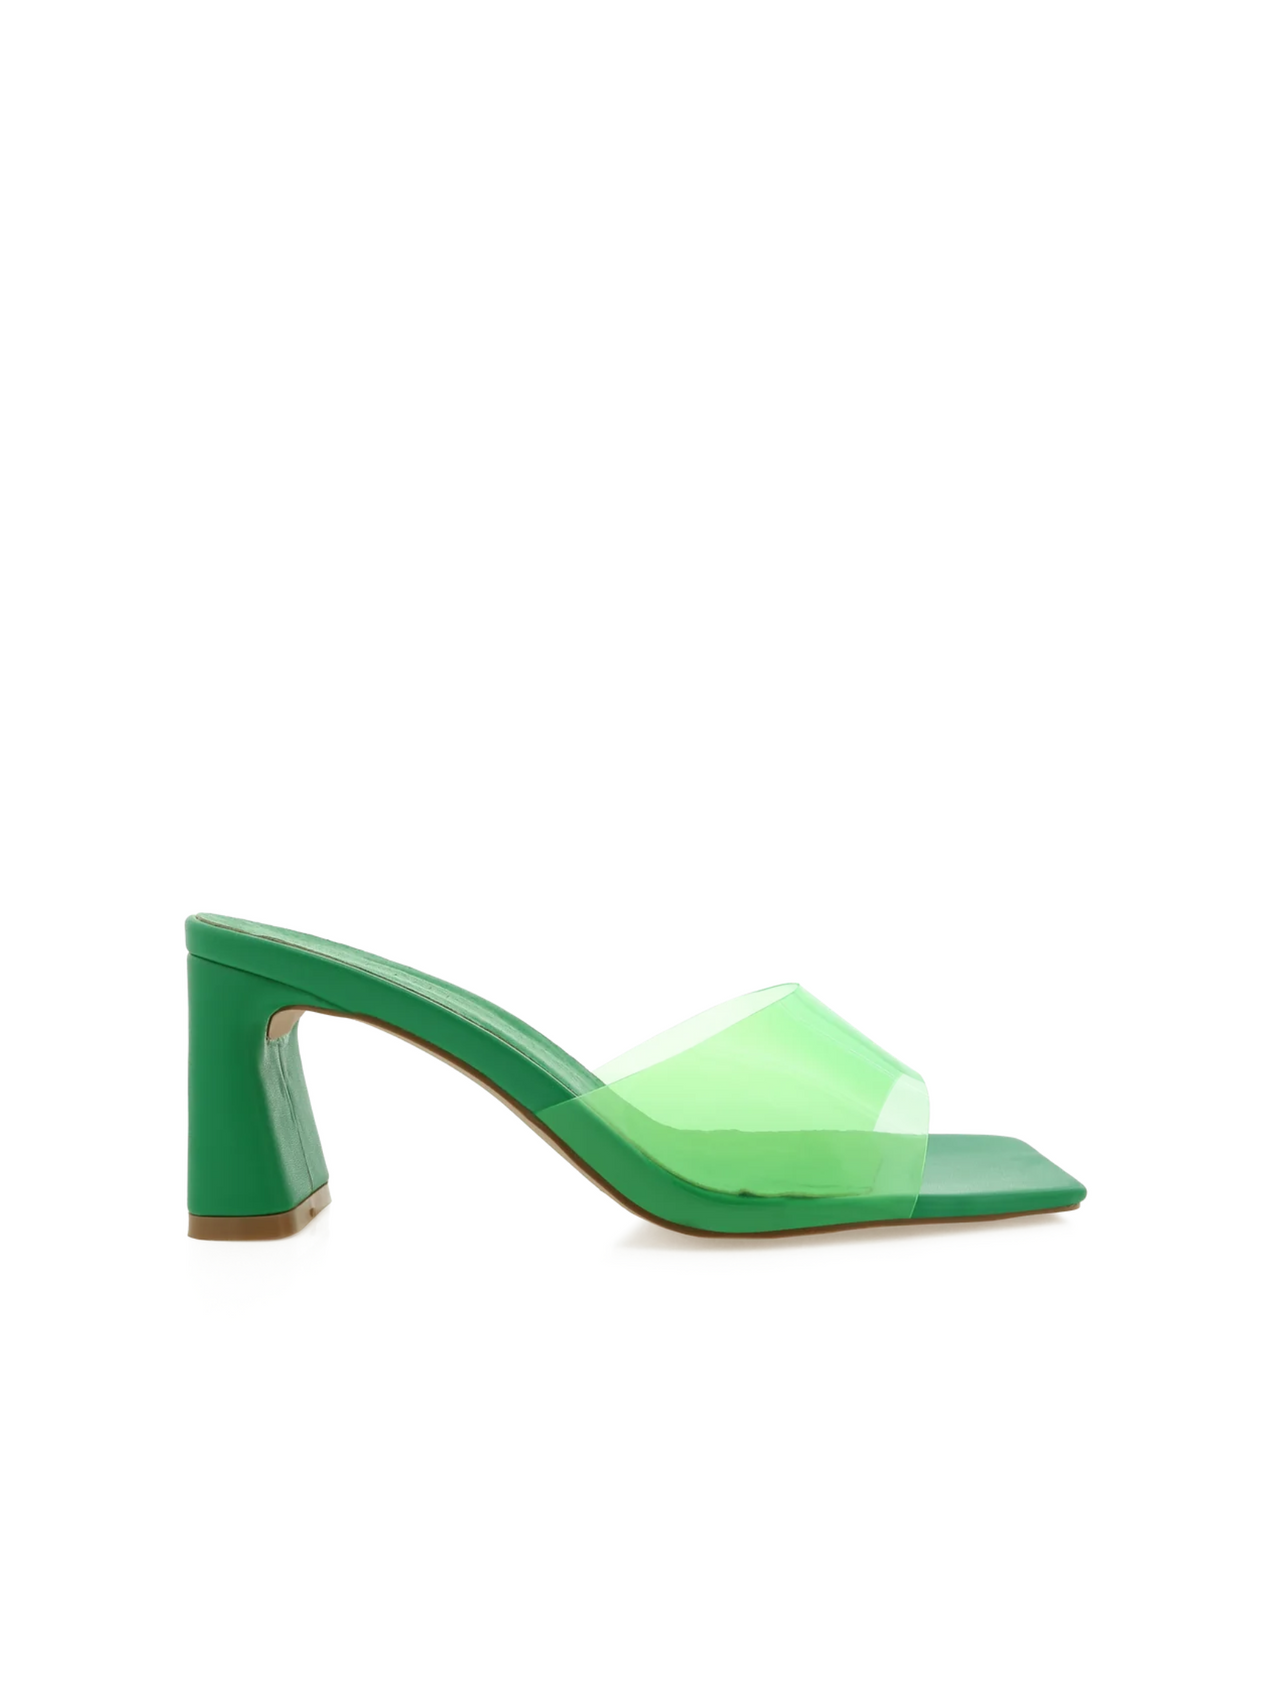 Mollie Mule Green, Heel Shoe by Billini | LIT Boutique